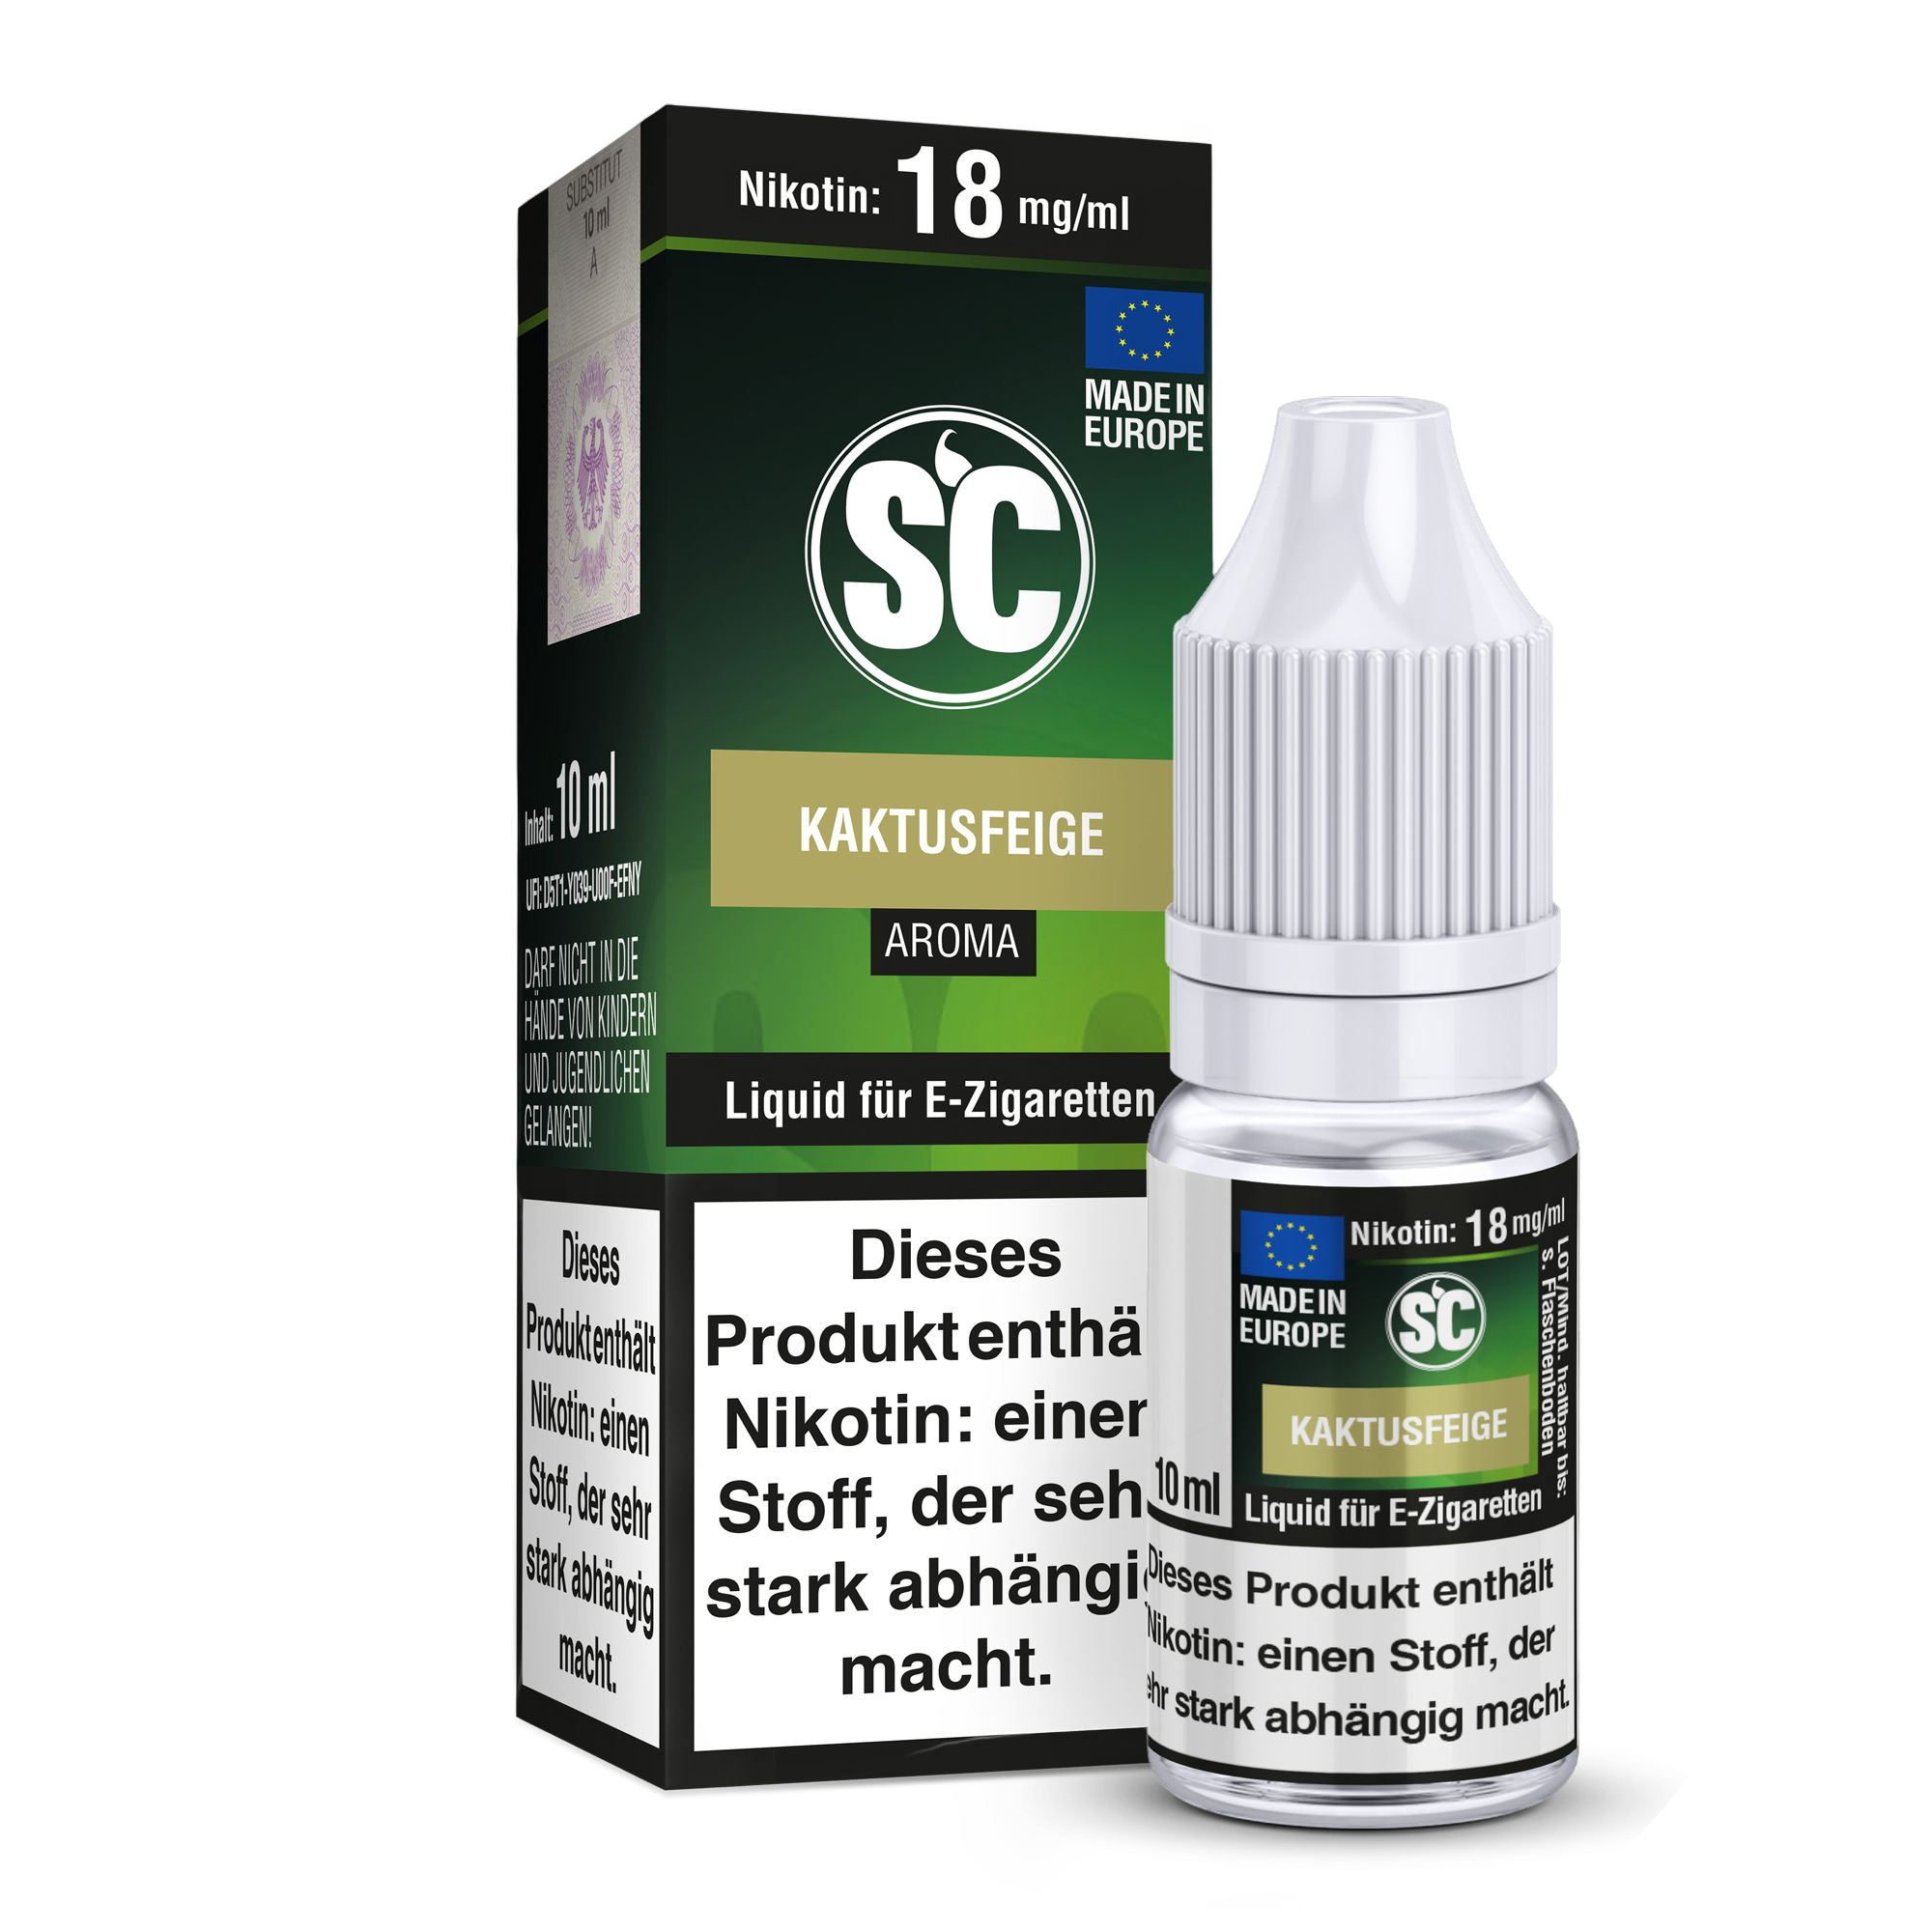 SC - Kaktusfeige Liquid 0 mg/ml